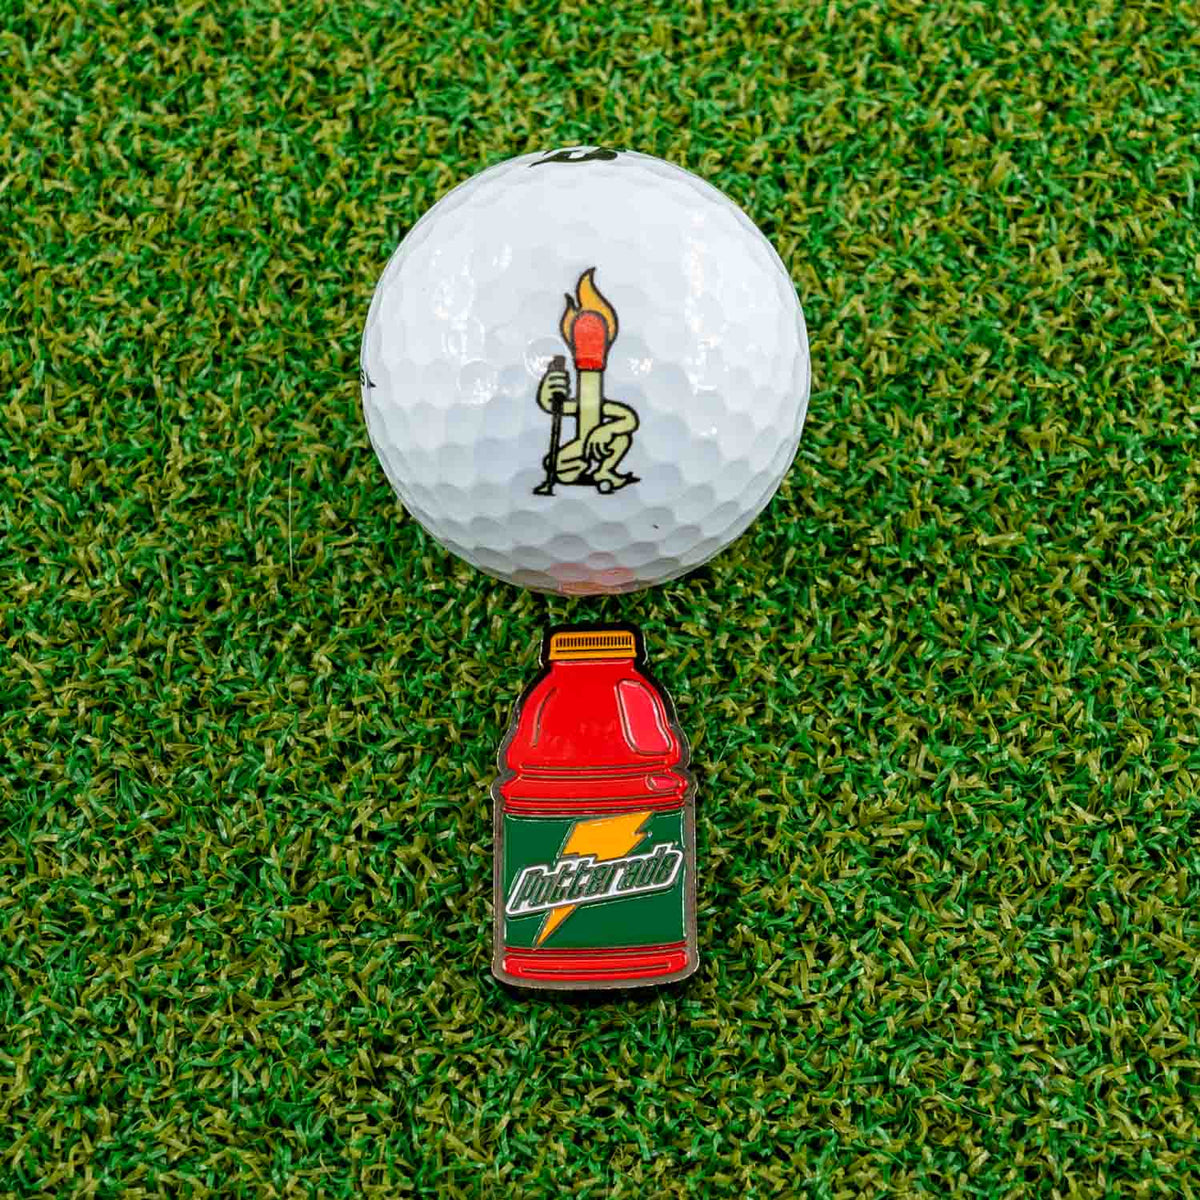 putterade golf ball marker gatorade red fruit punch grass golf ball